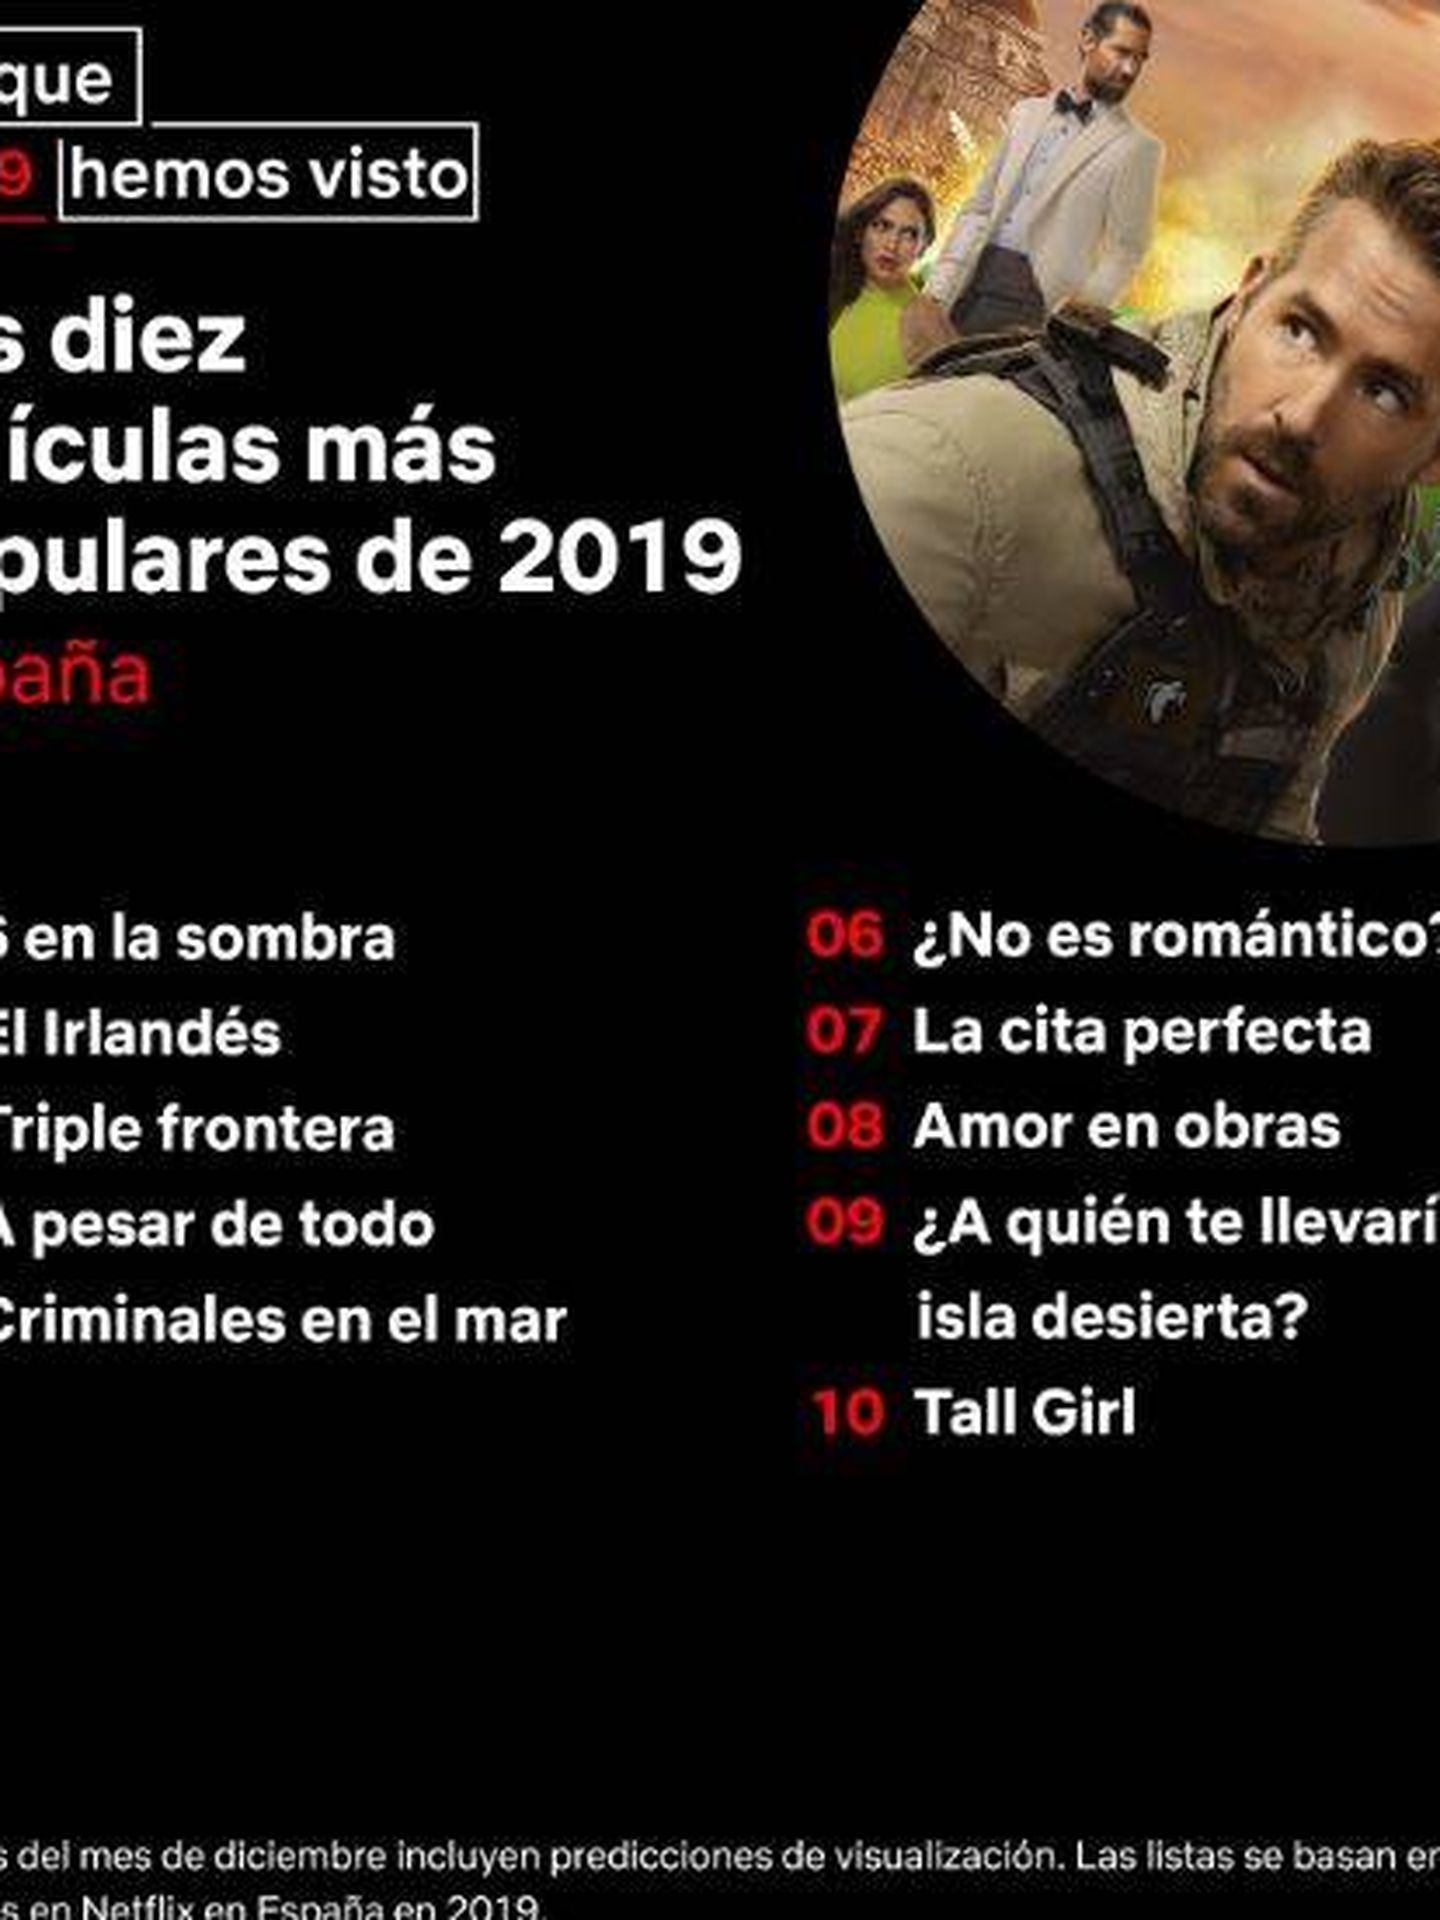 Las películas de Netflix más vistas en España en 2019. (Twitter)